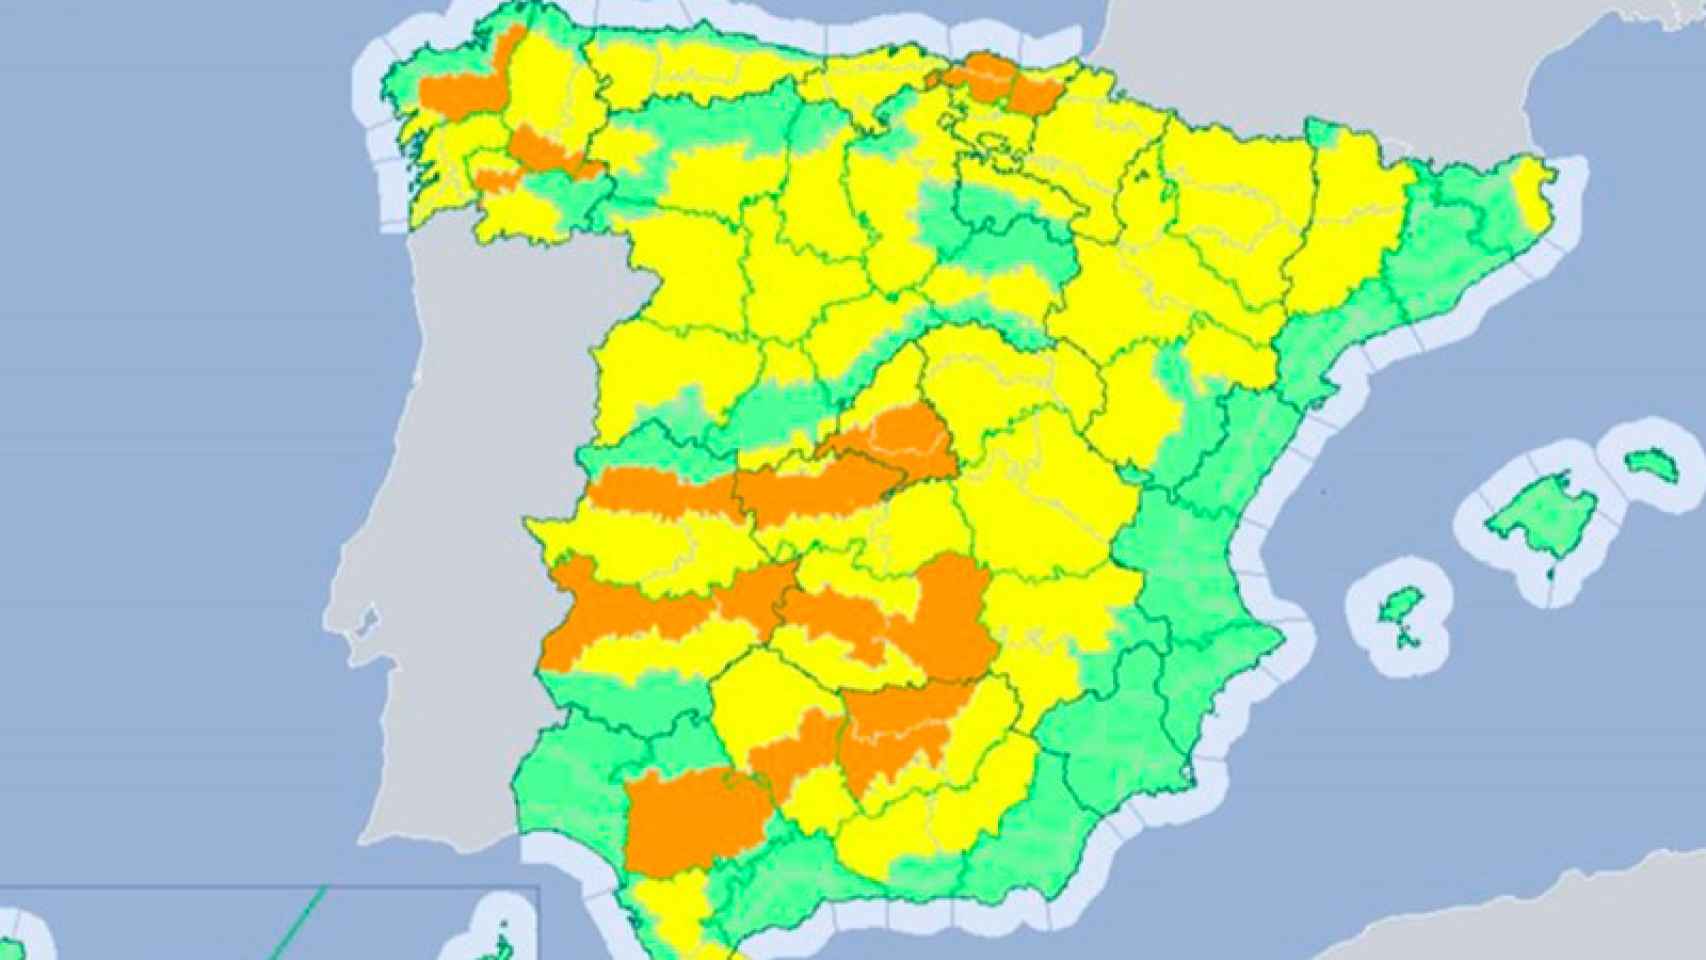 La Aemet señala en color amarillo las zonas del país donde el riesgo de altas temperaturas es mayor.